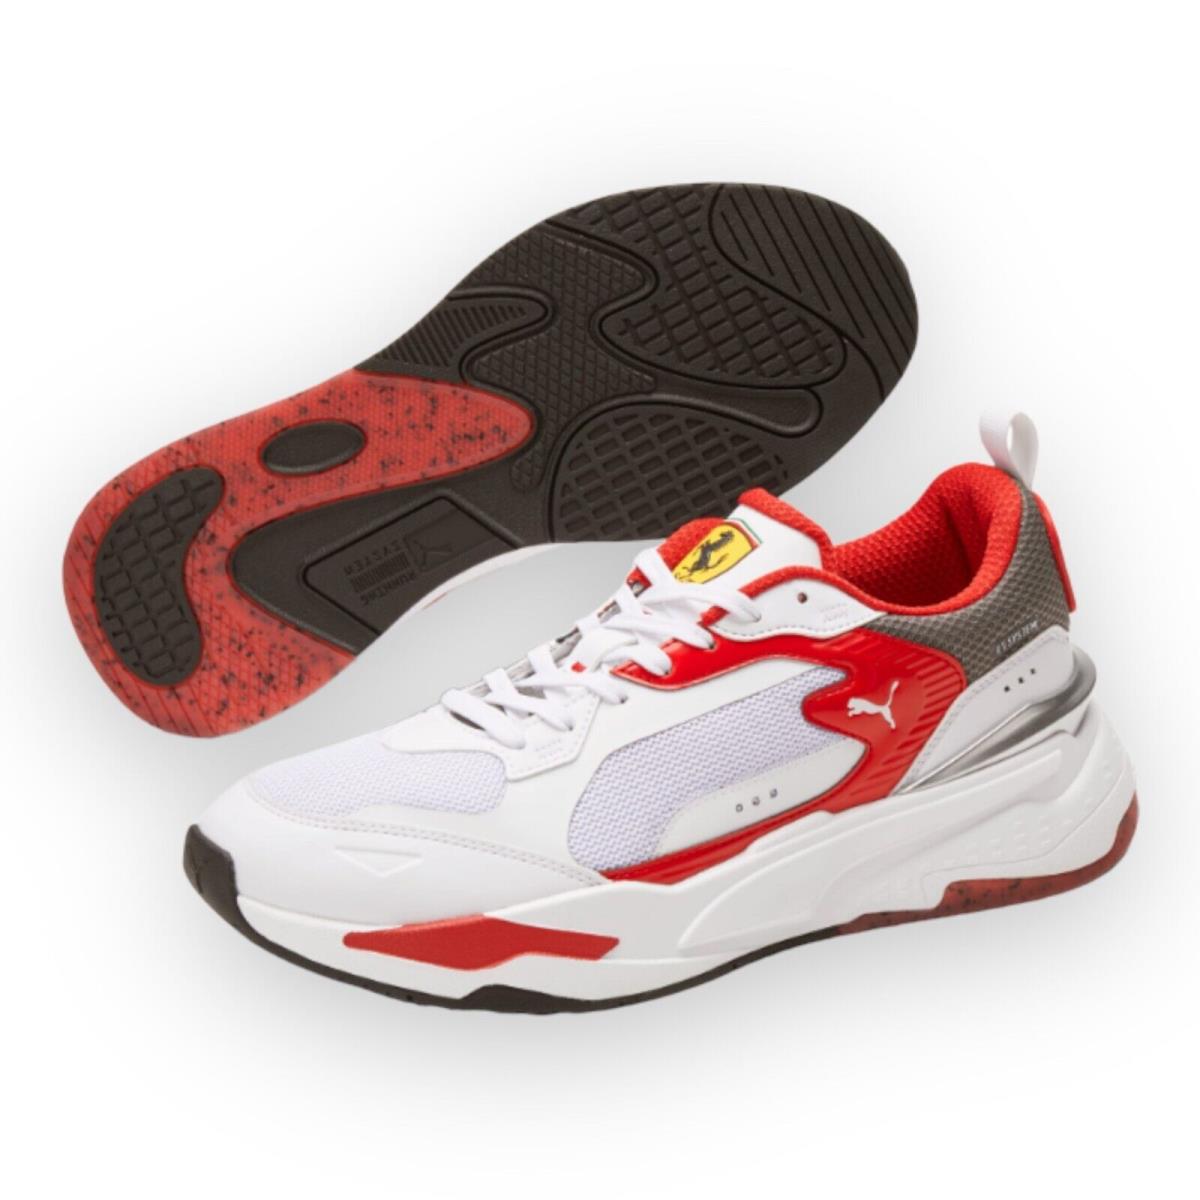 Puma Men`s Ferrari Rs-fast Sneakers 307161 02 - WHITE/ROSSO CORSA/SMOKED PEARL